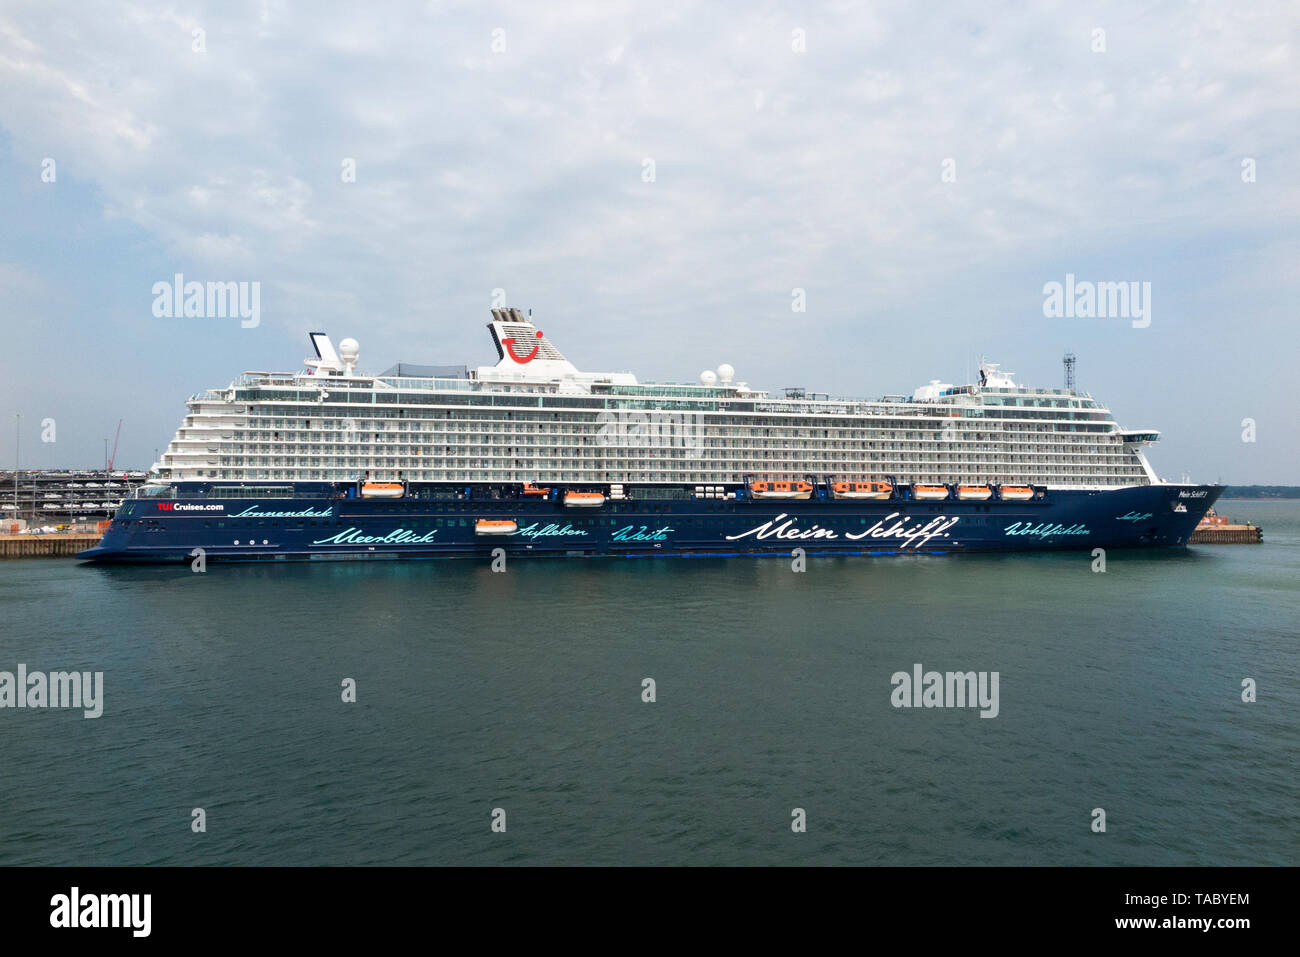 Kreuzfahrtschiff Mein Schiff 3 (englisch: "Mein Schiff 3"), dargestellt in Southampton Hafen / am Hafen ist. Schiff ist im Besitz & von TUI Cruises. (99) Stockfoto